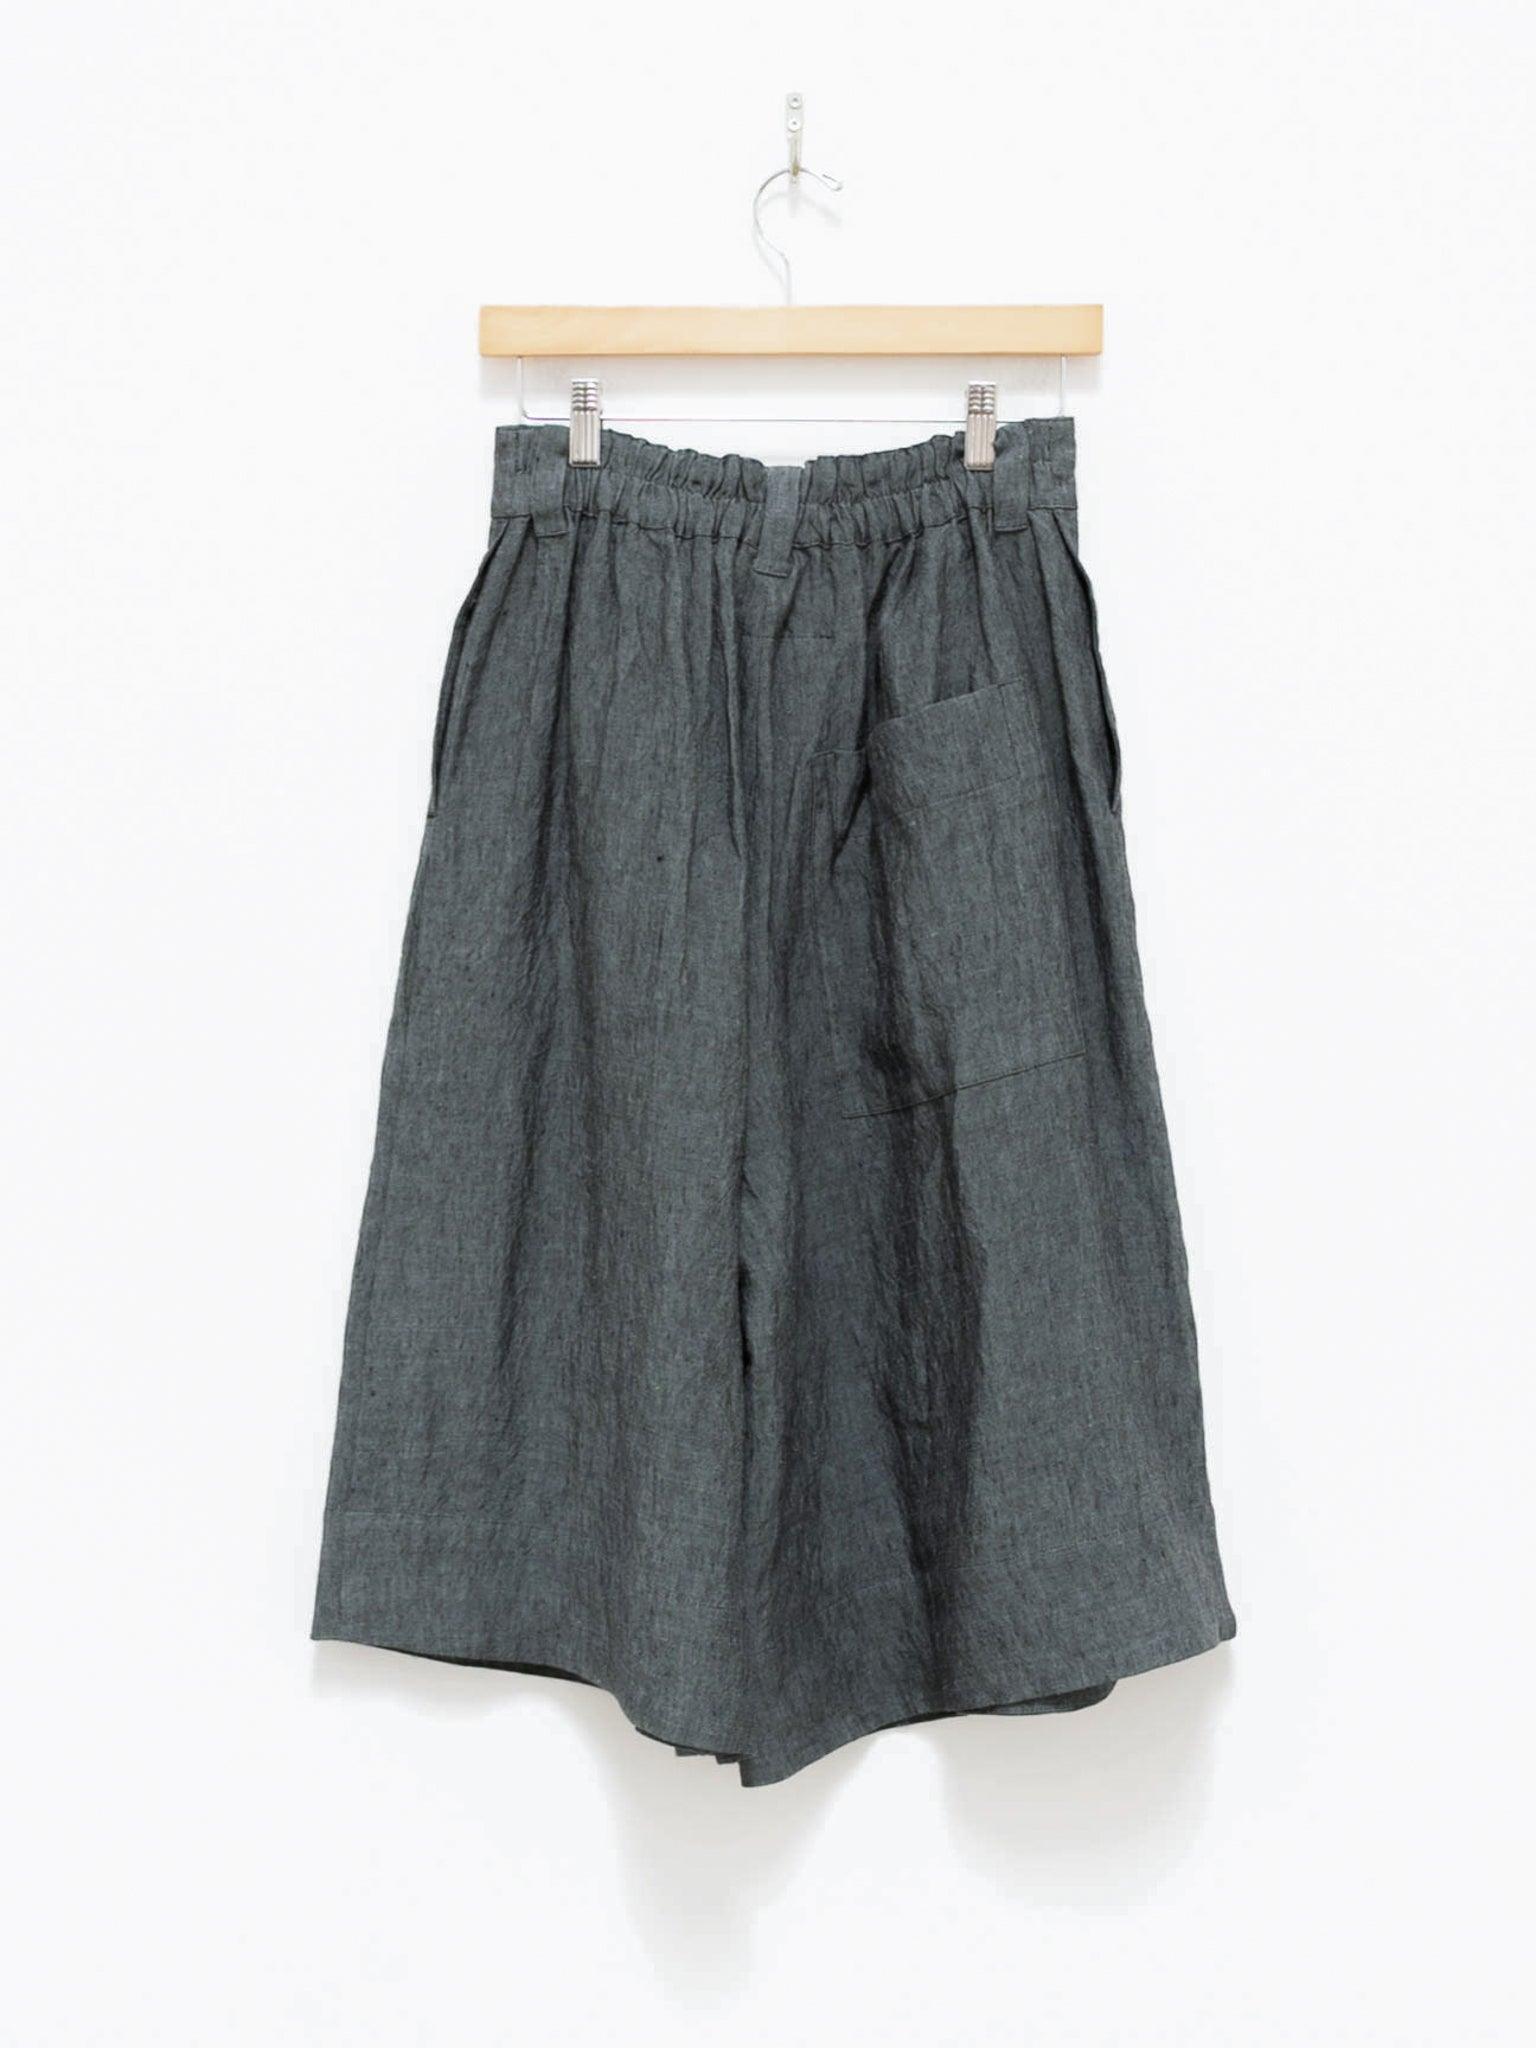 Namu Shop - Toogood The Landscaper Shorts - Blue Slate Laundered Linen